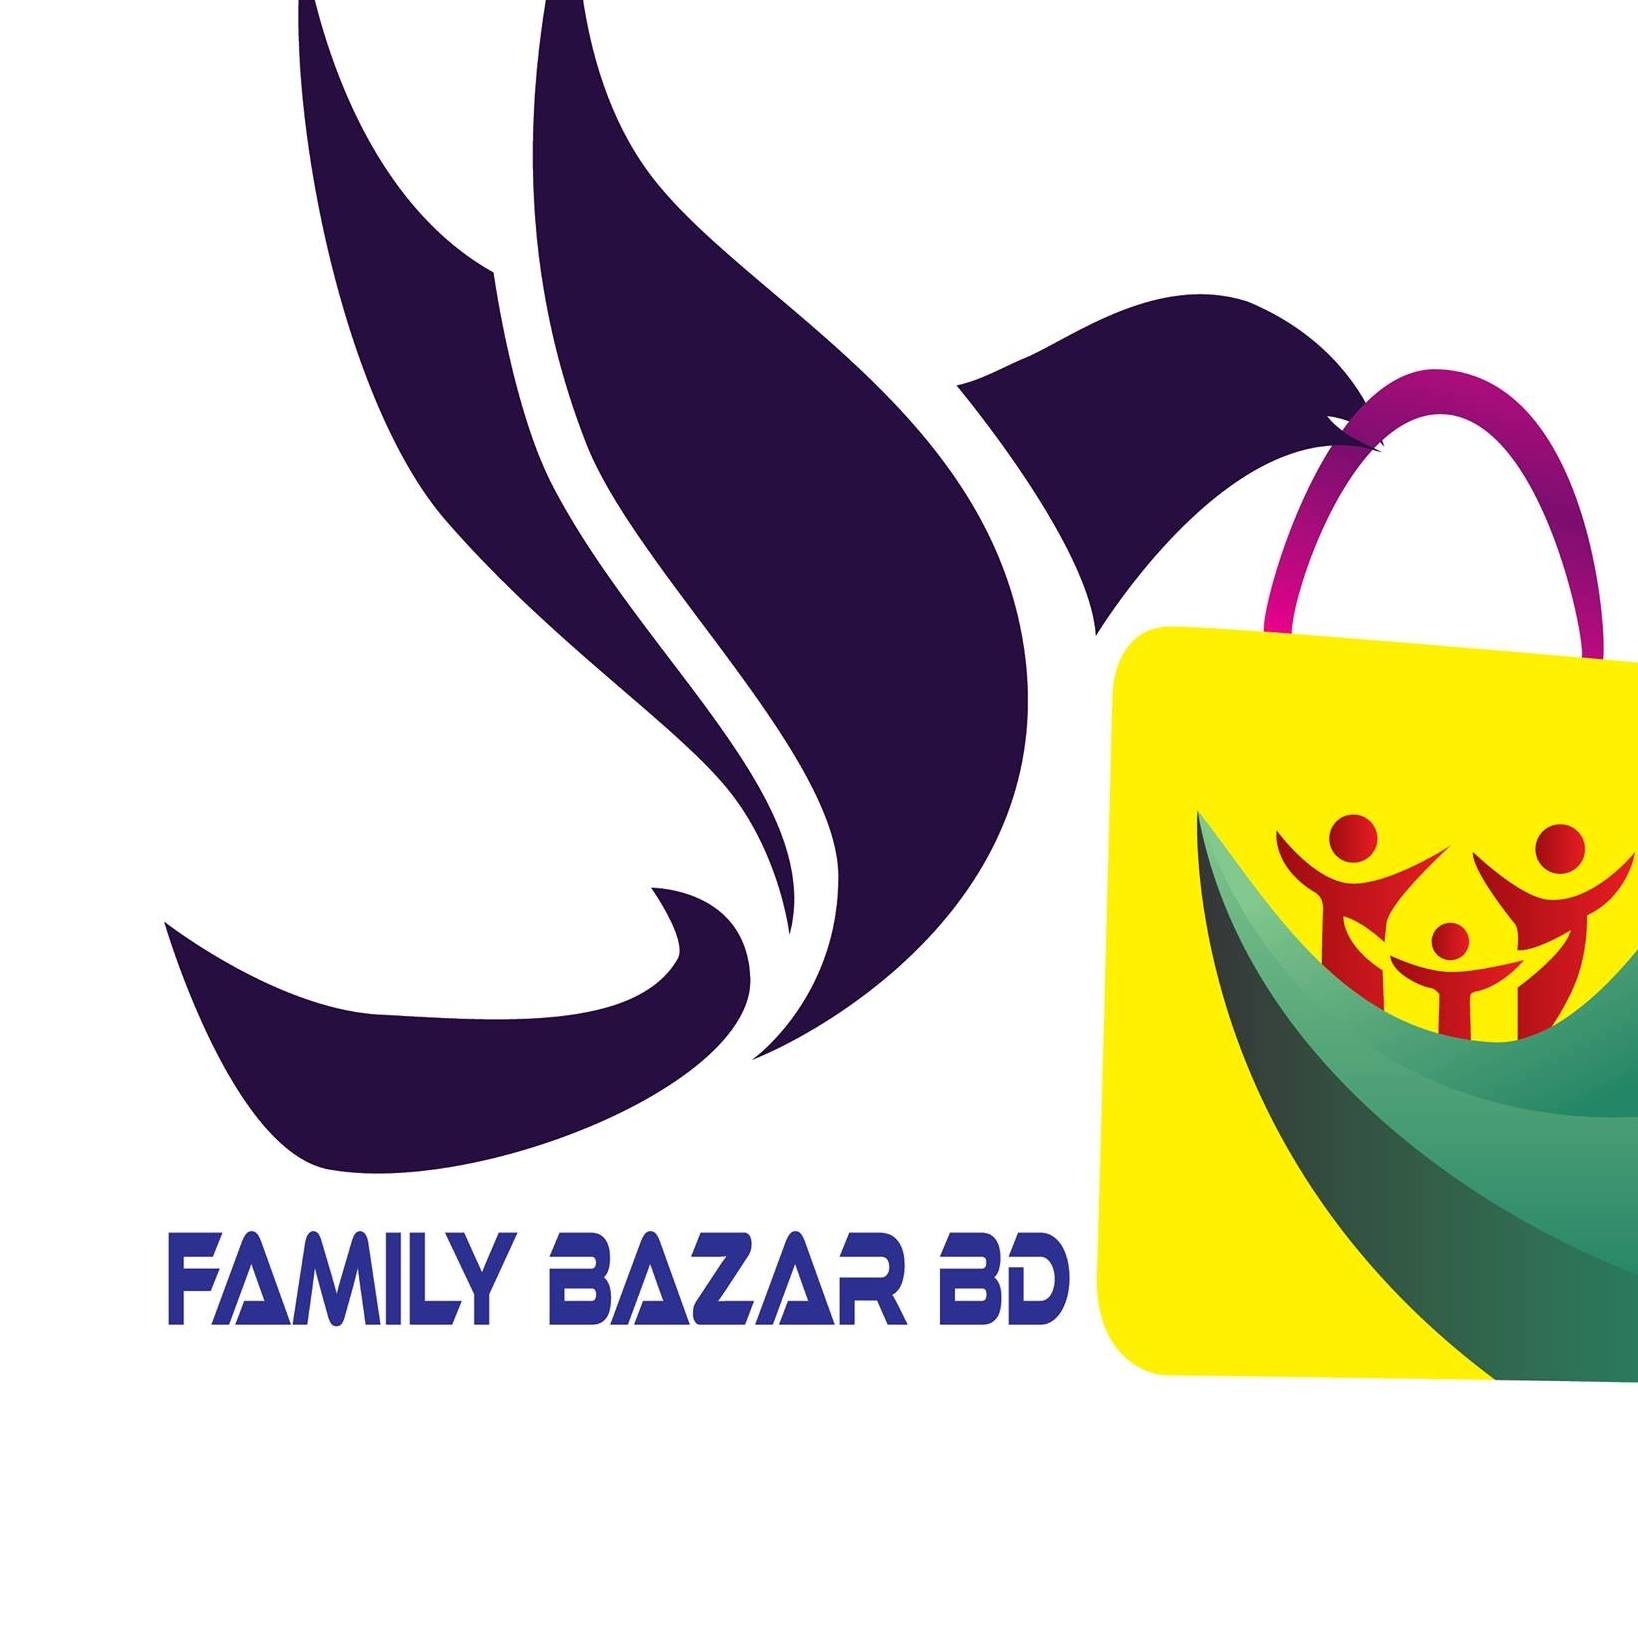 Family Bazzar BD